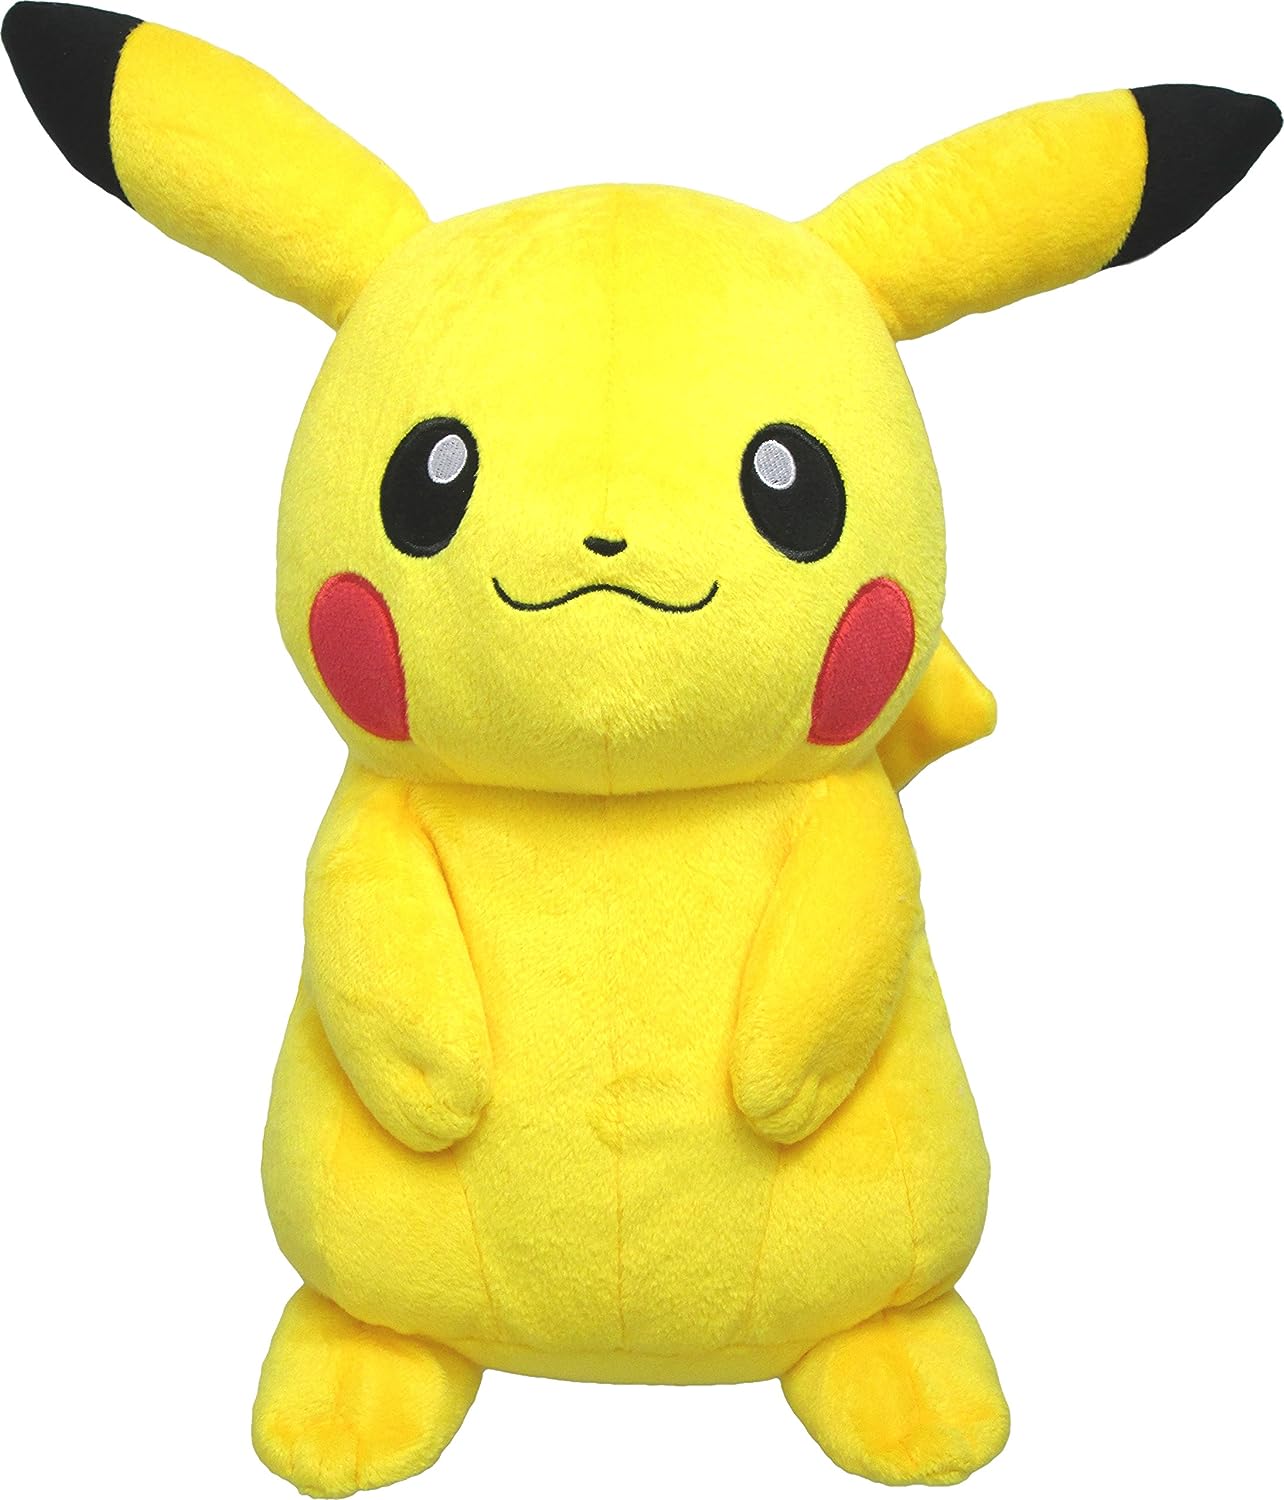 Sanei Pokémon Plush - Pikachu